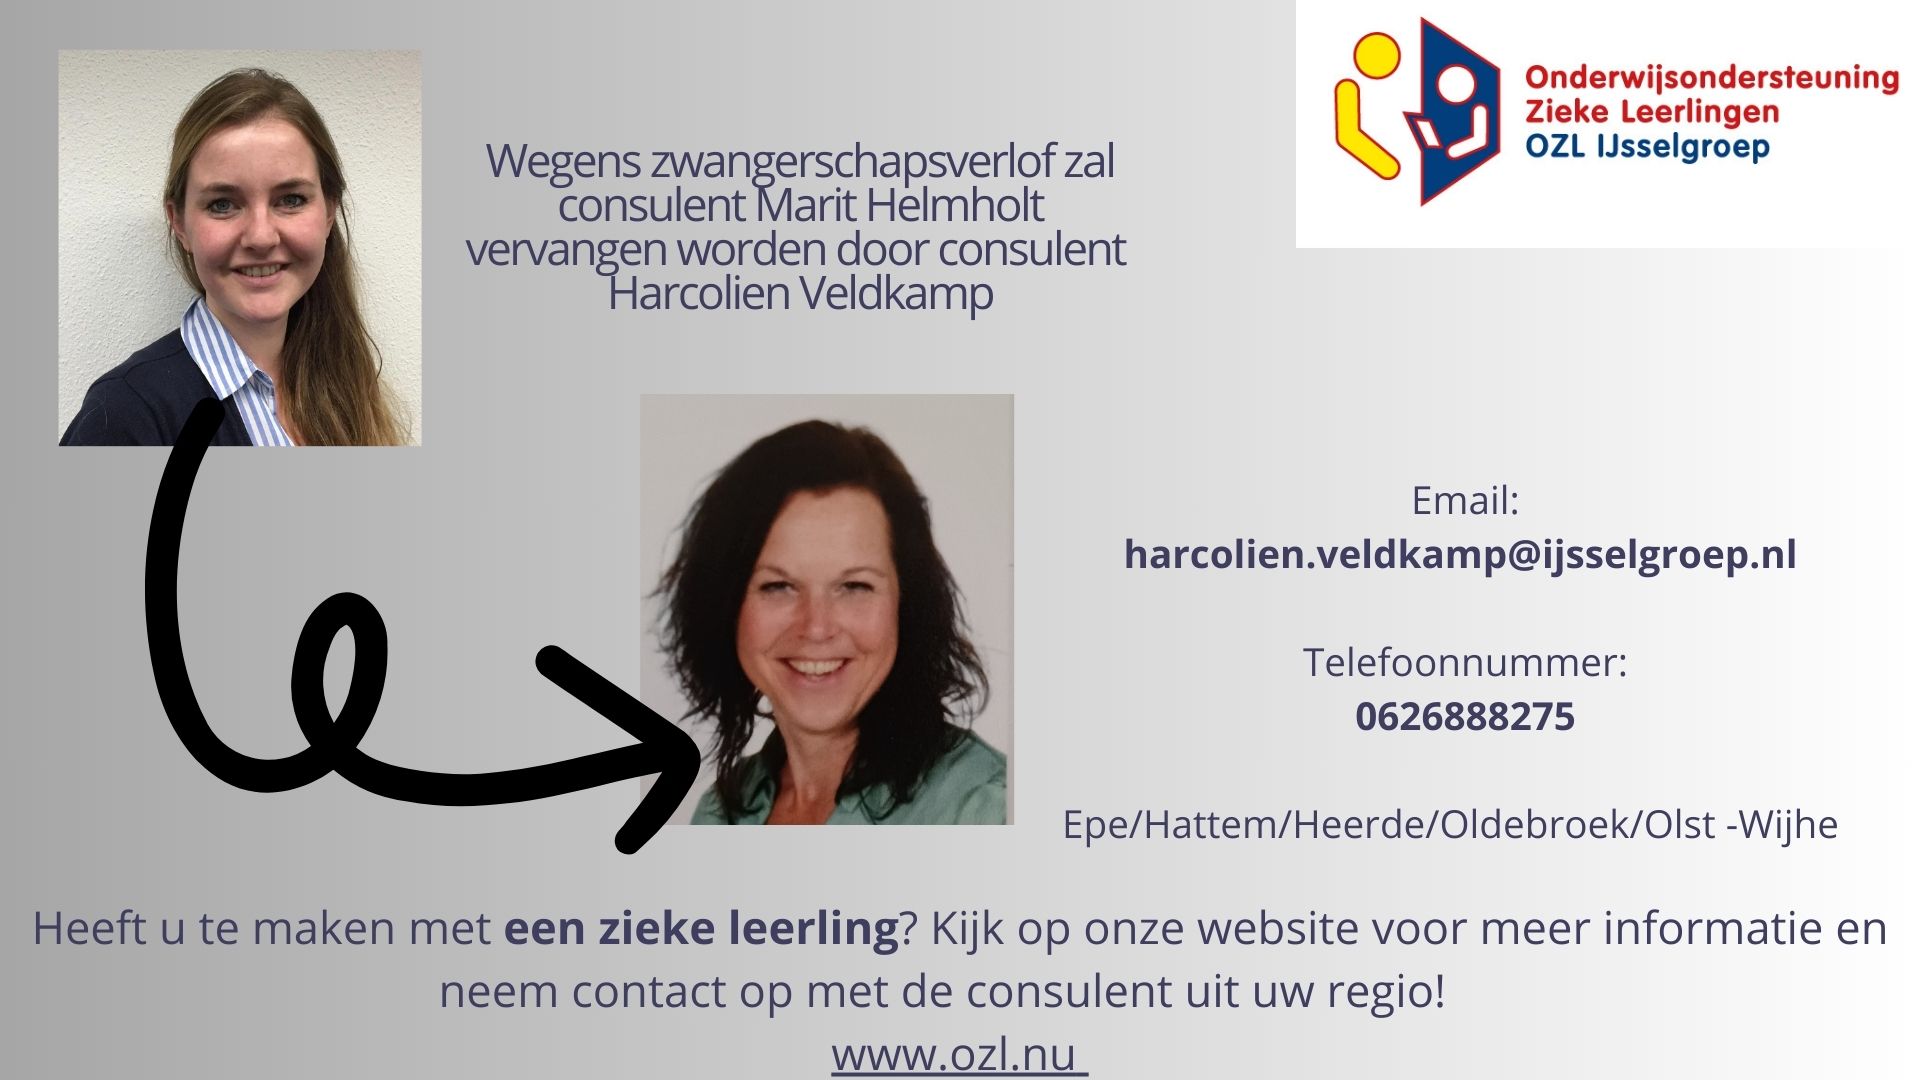 Wegens zwangerschap zal Marit Helmholt vervangen worden door Harcolien Veldkamp presentatie